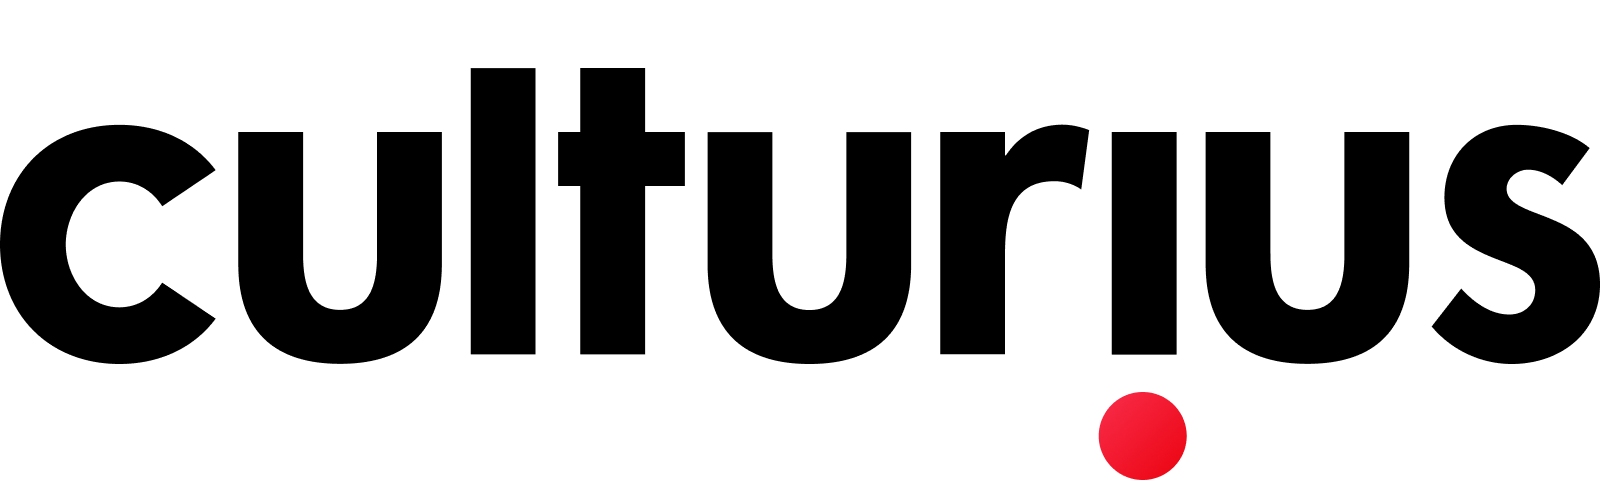 Logo Culturius écrit au complet en noir et un gros point rouge inversé du i vers le bas